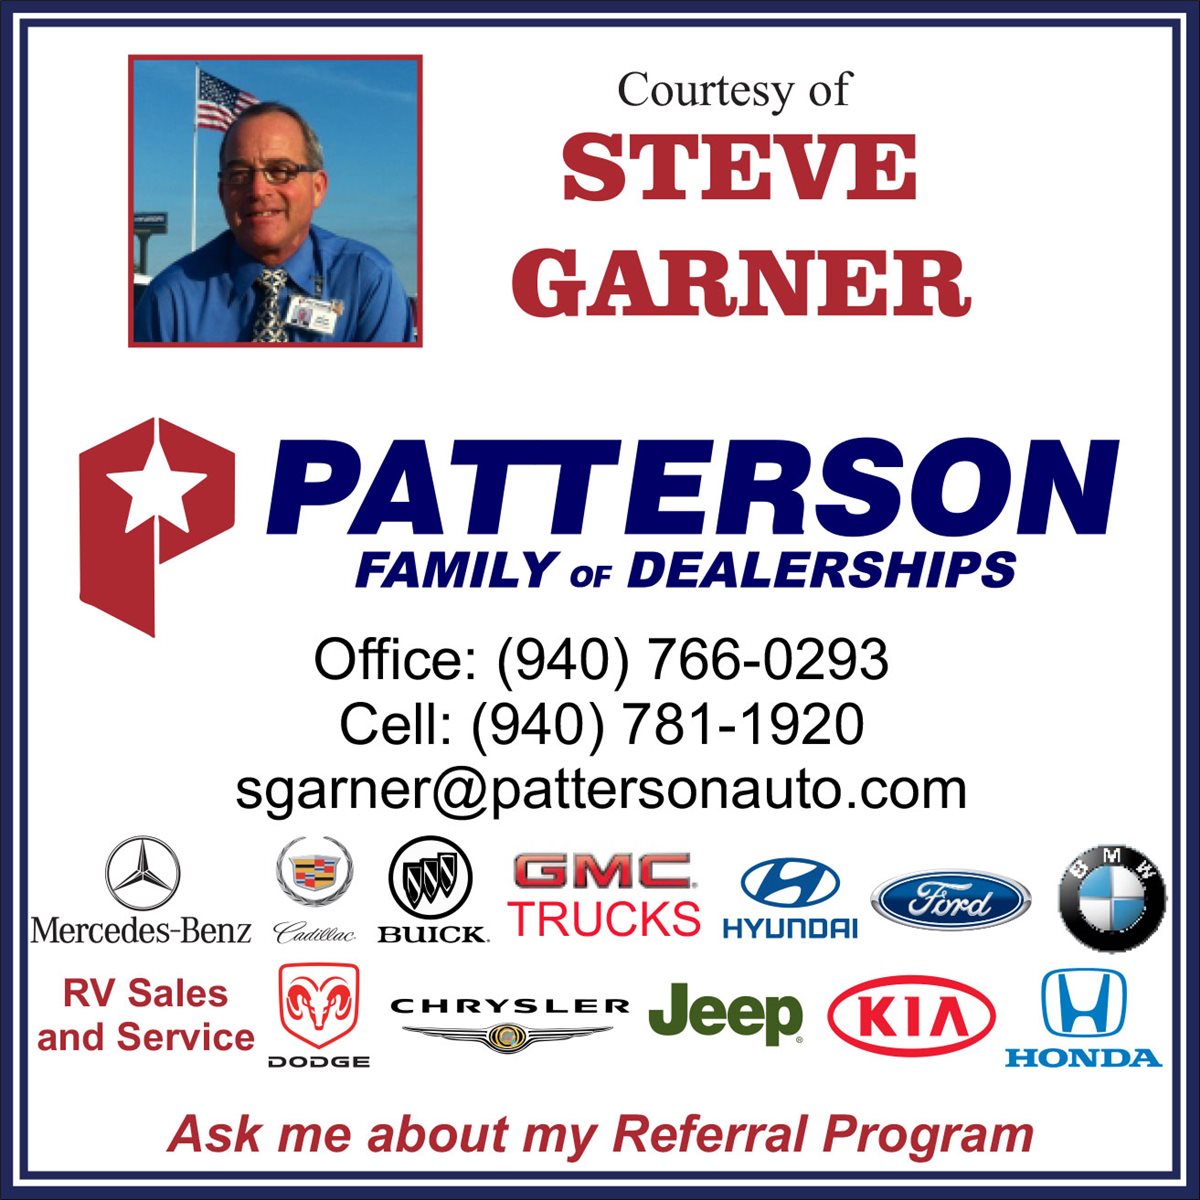 Patterson Auto Group - Stephen Garner